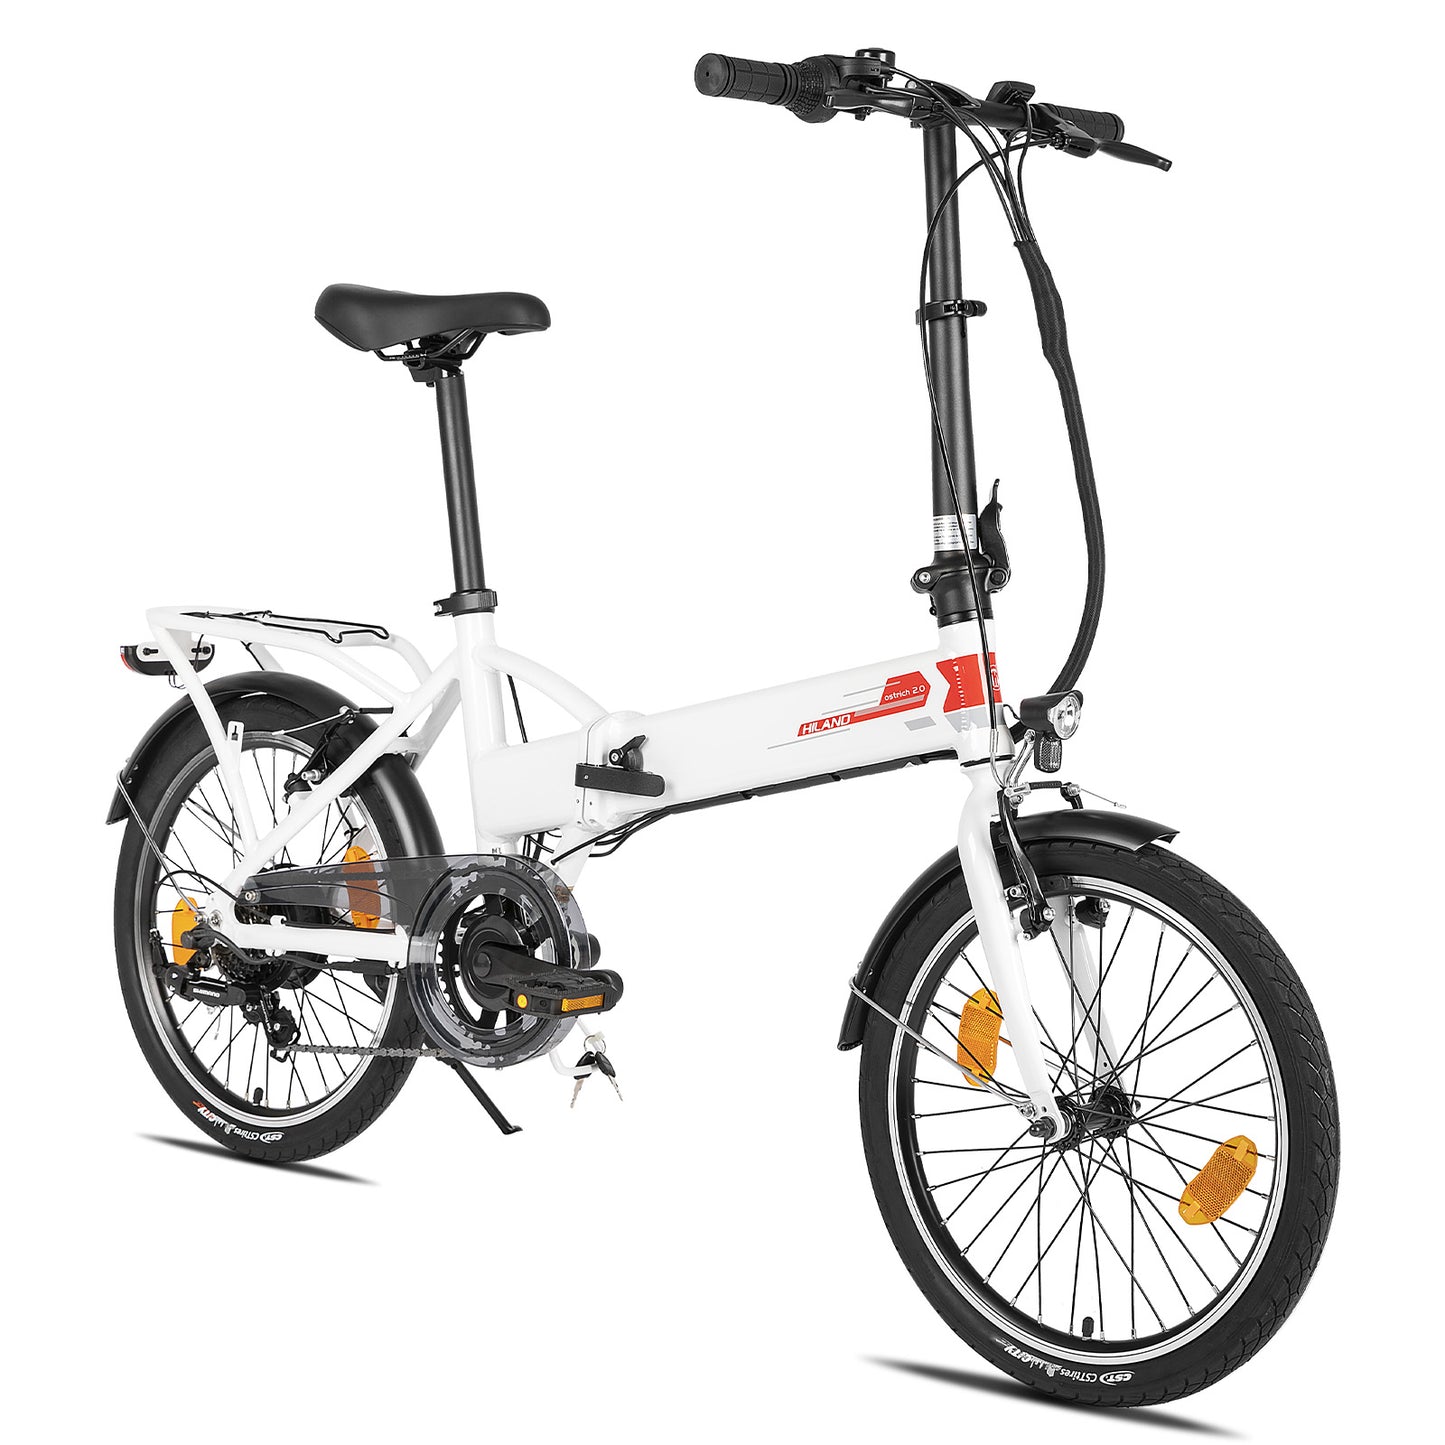 HILAND struisvogel 250W elektrische fiets